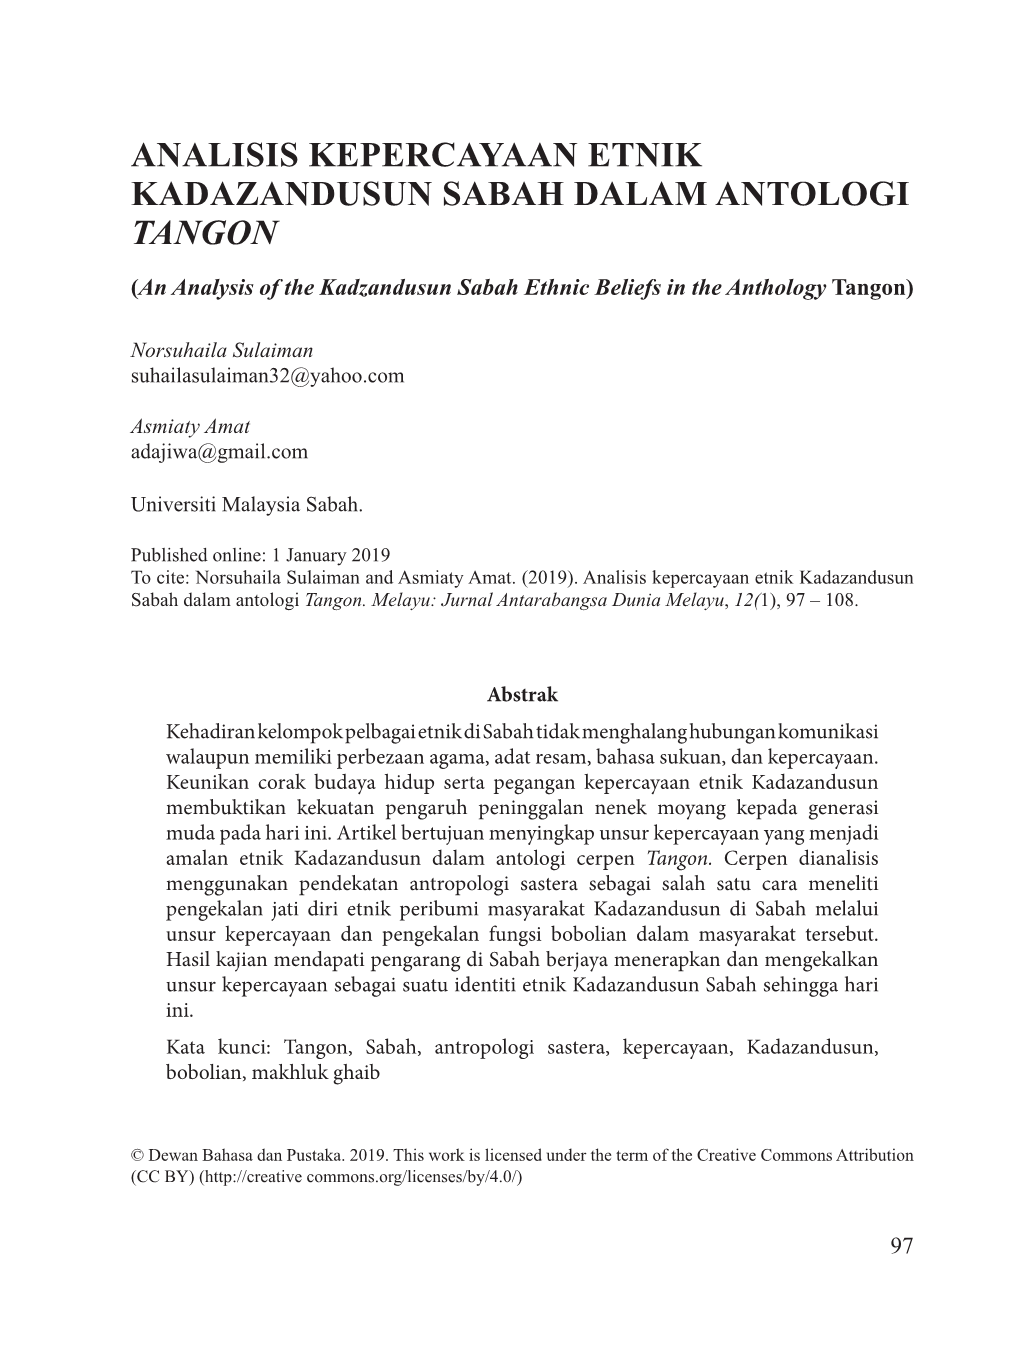 Analisis Kepercayaan Etnik Kadazandusun Sabah Dalam Antologi Tangon